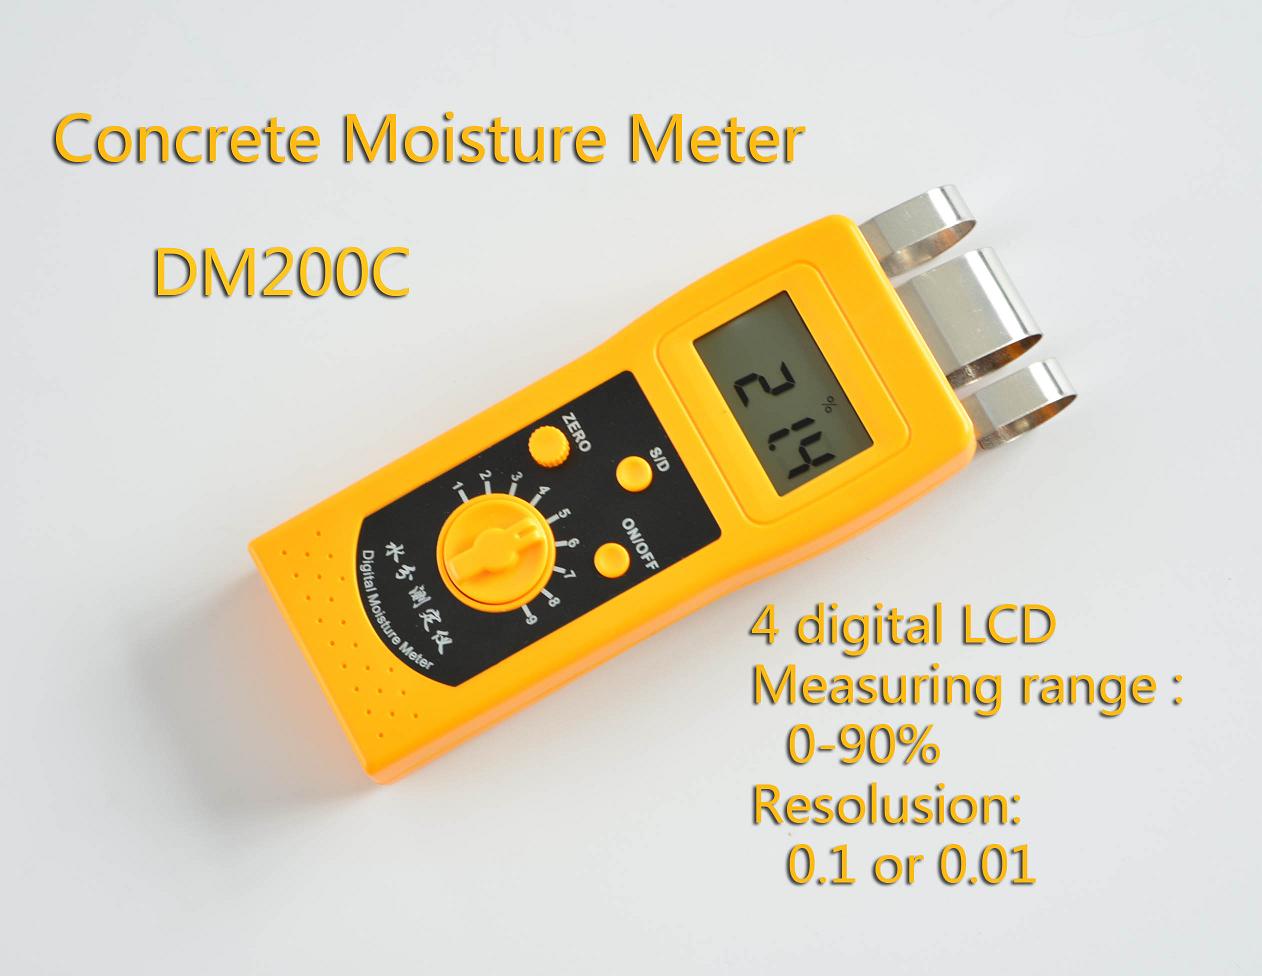 Concrete Moisture Meter DM200C